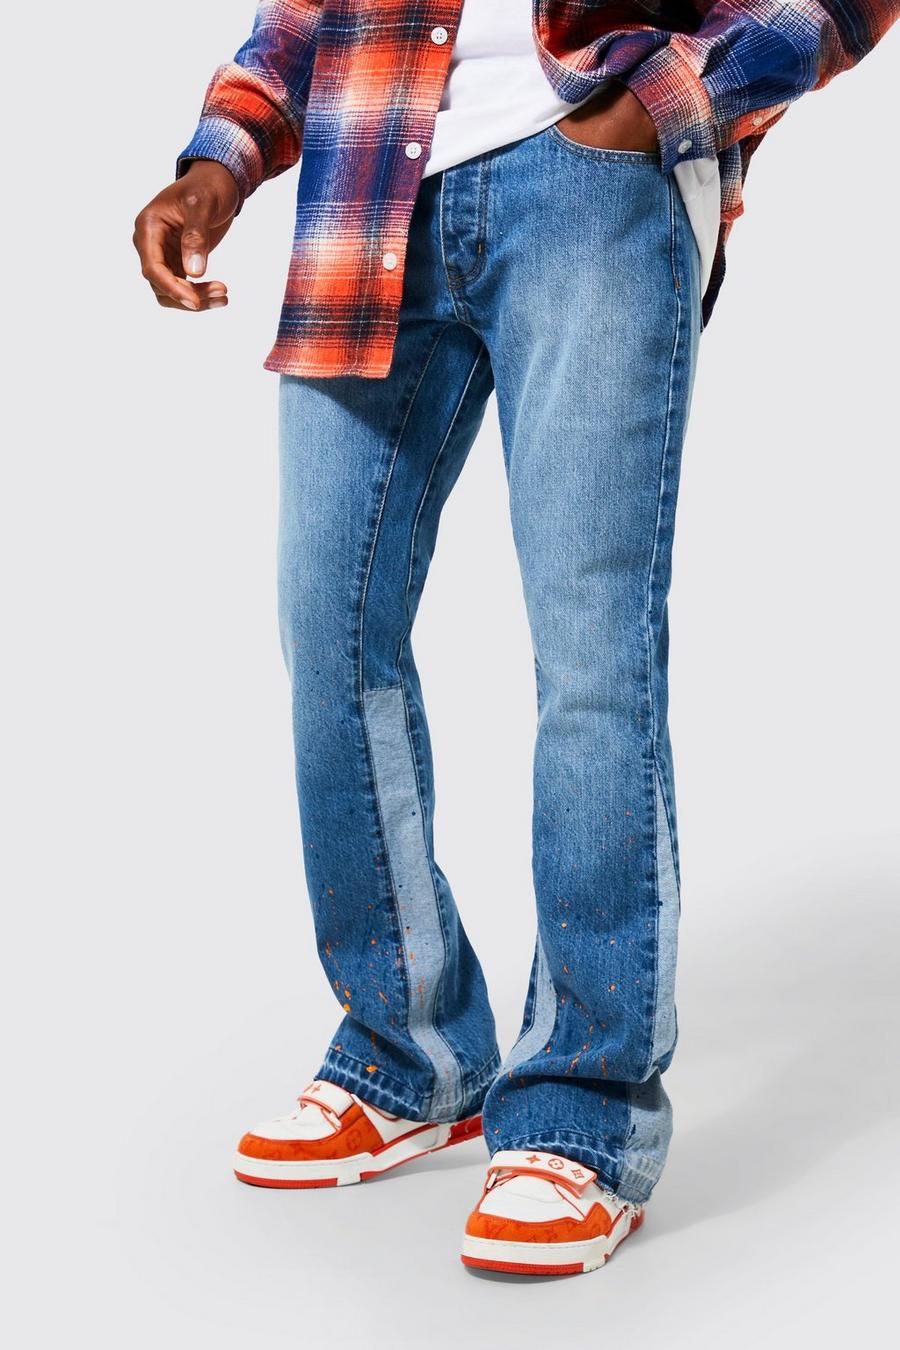 Men's Paint Splatter Jeans, Men's Paint Splattered Jeans